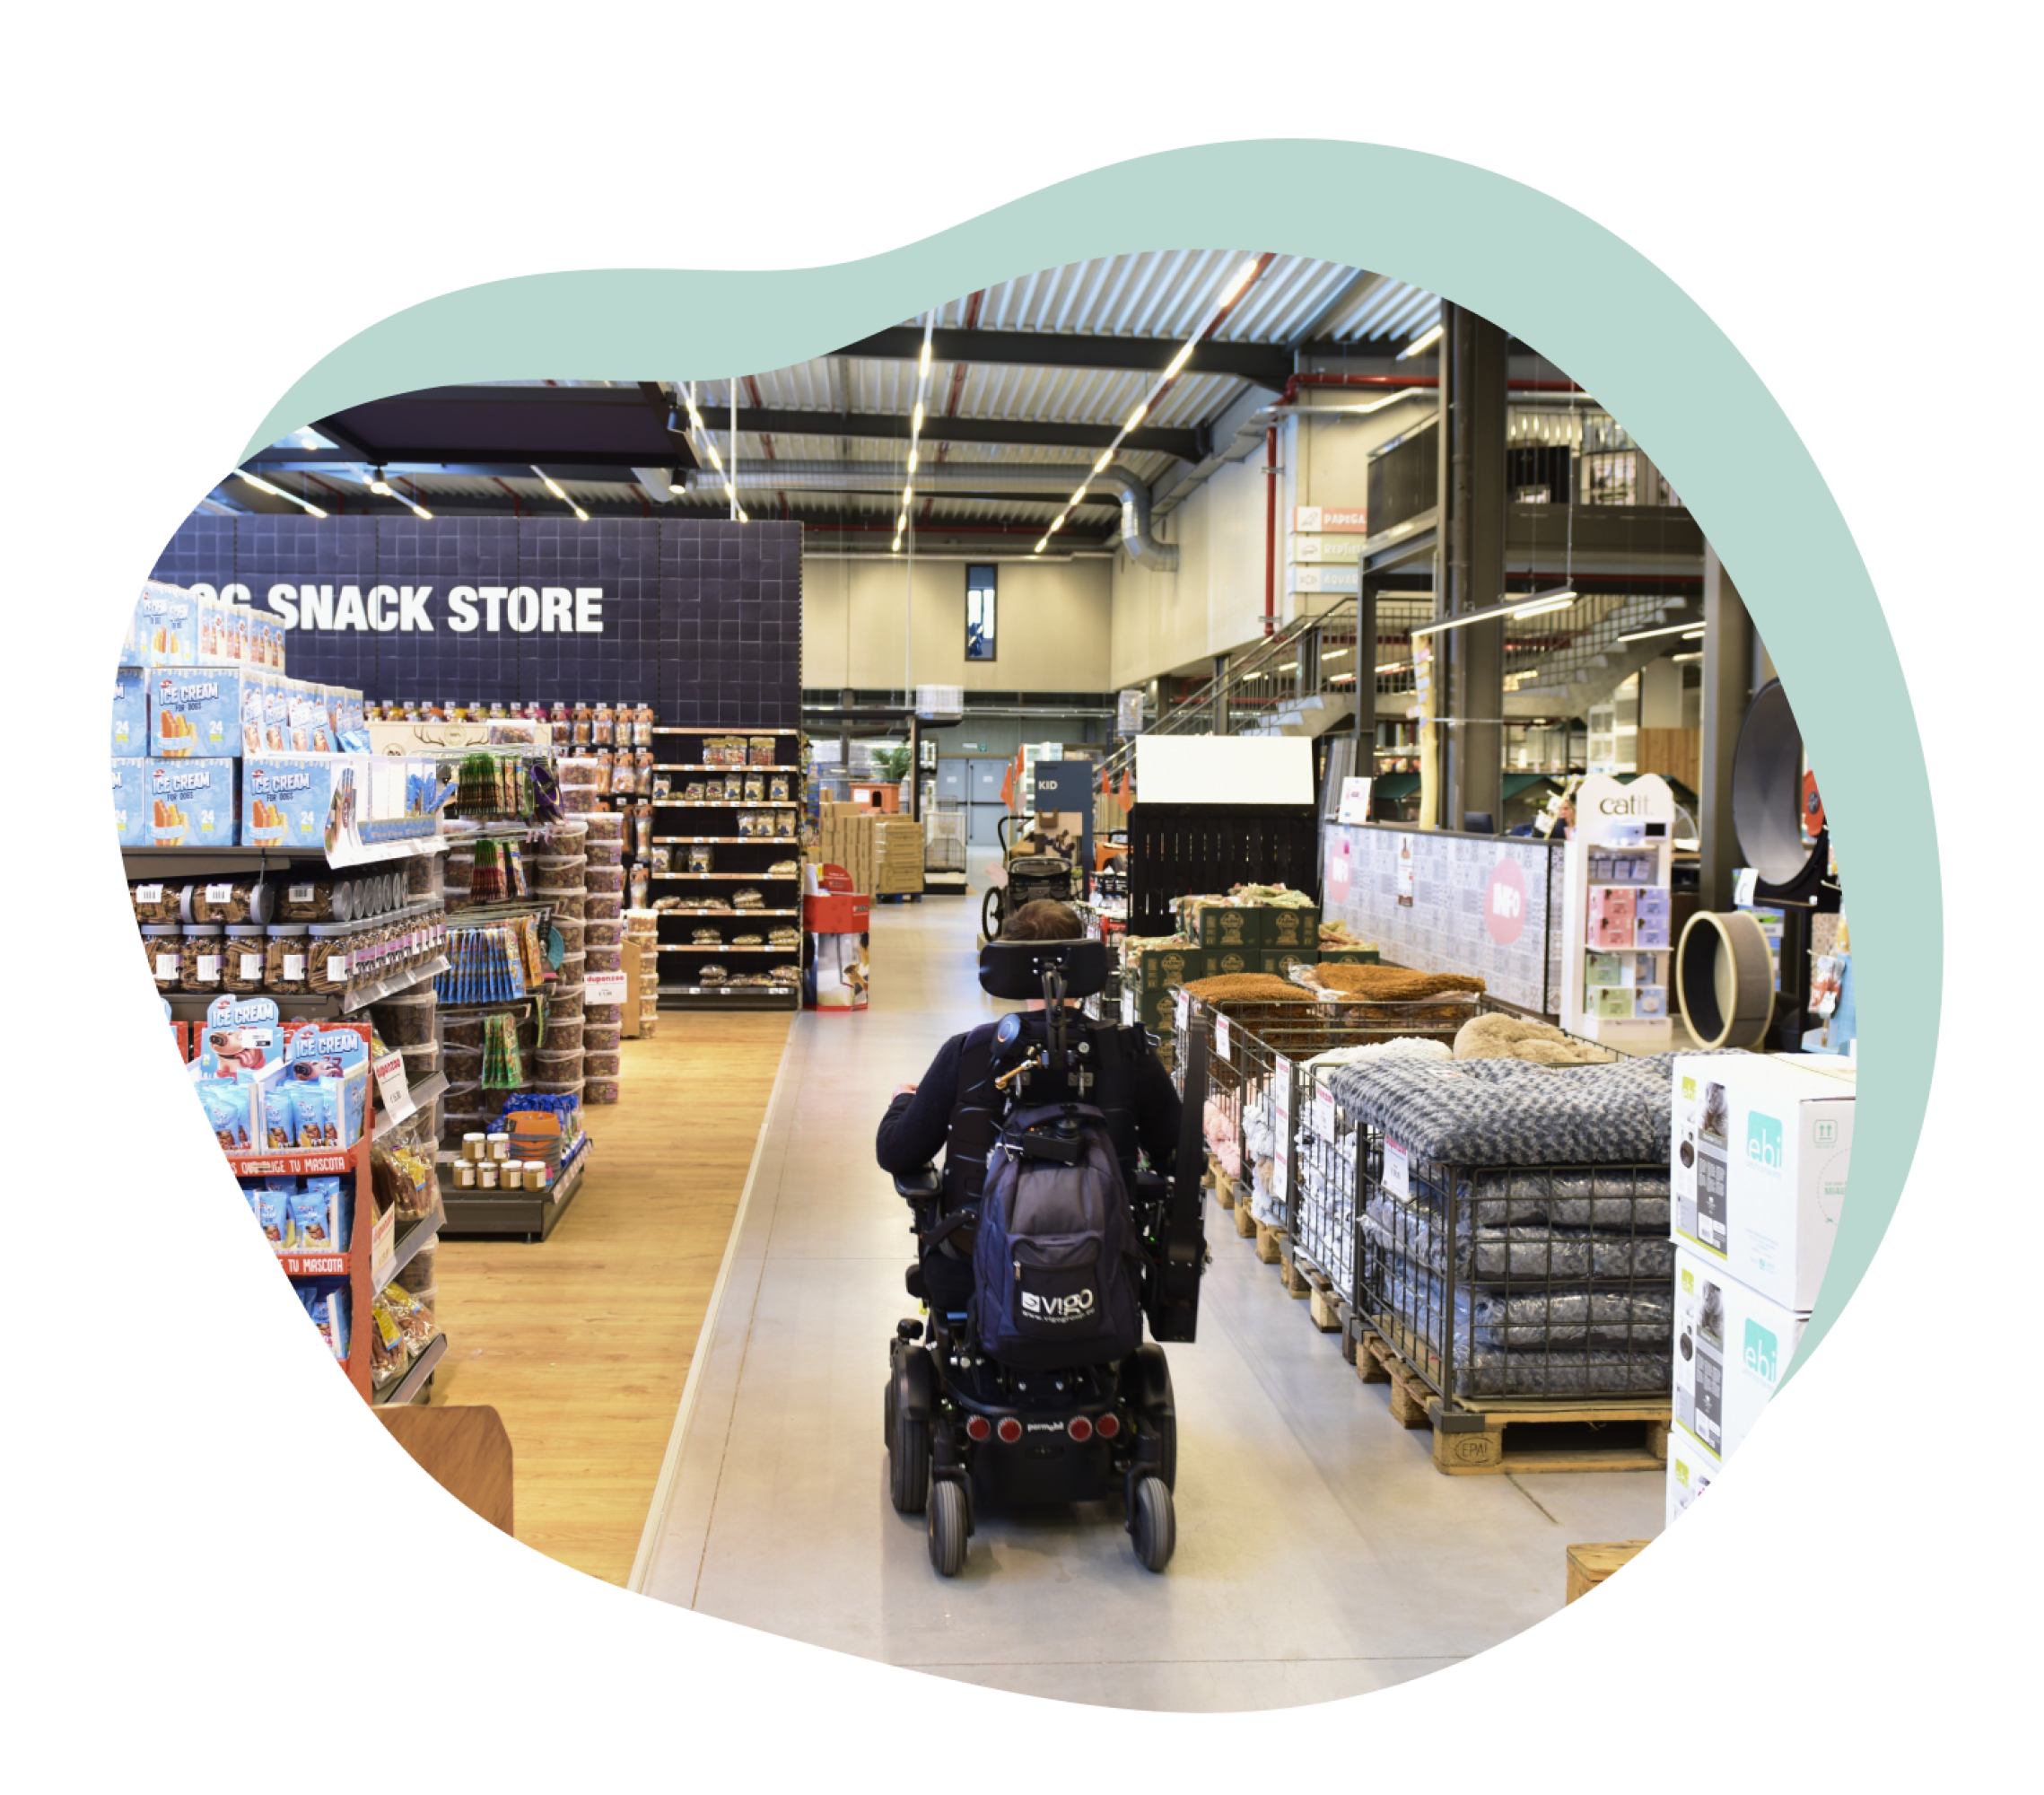 Man in elektrische rolstoel kan makkelijk de winkel bezoeken dankzij brede doorgang